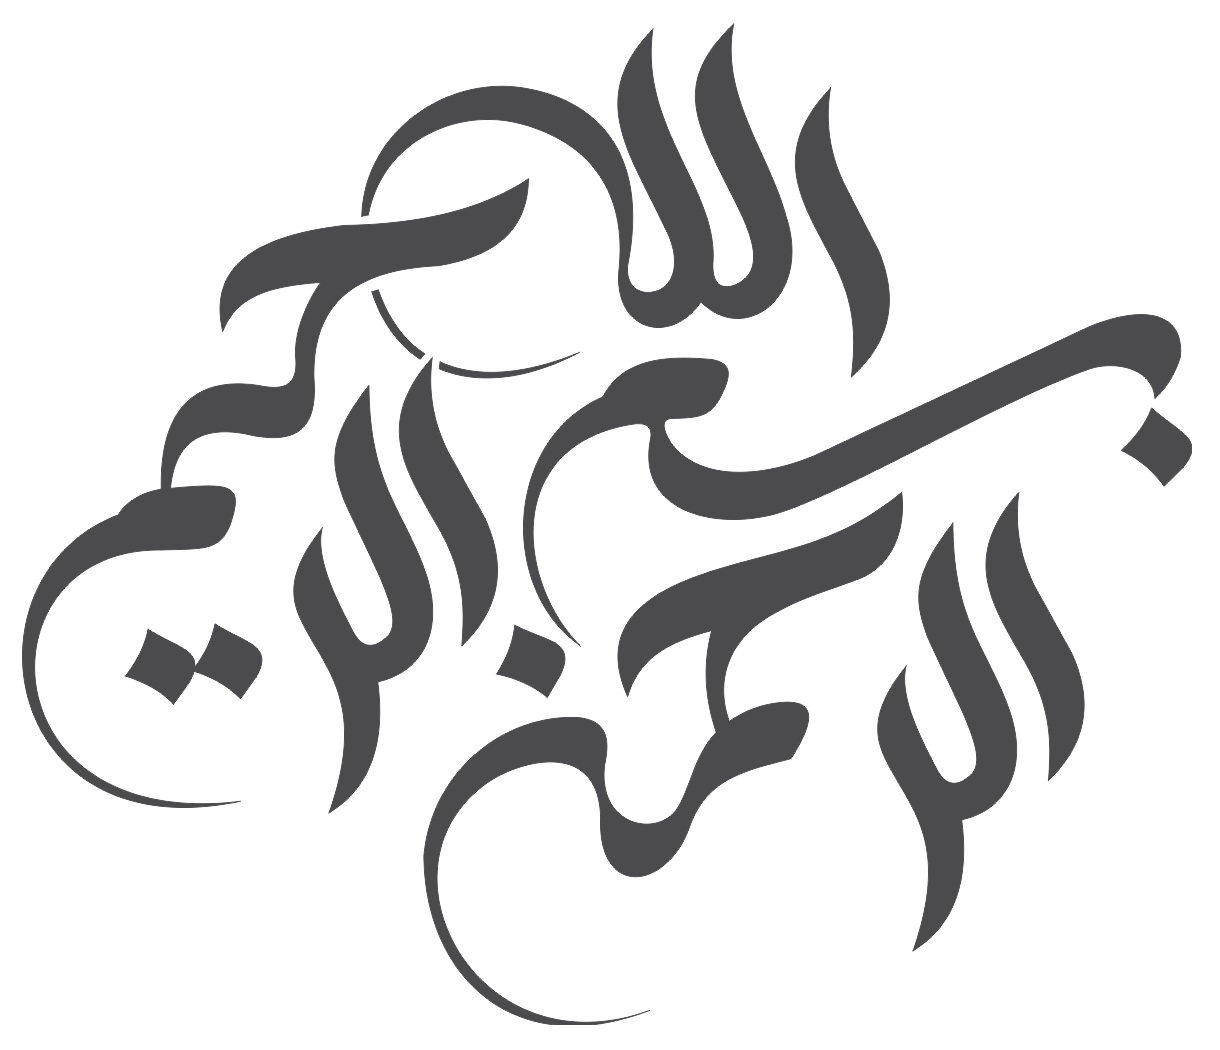 Arte de caligrafía árabe Bismillah